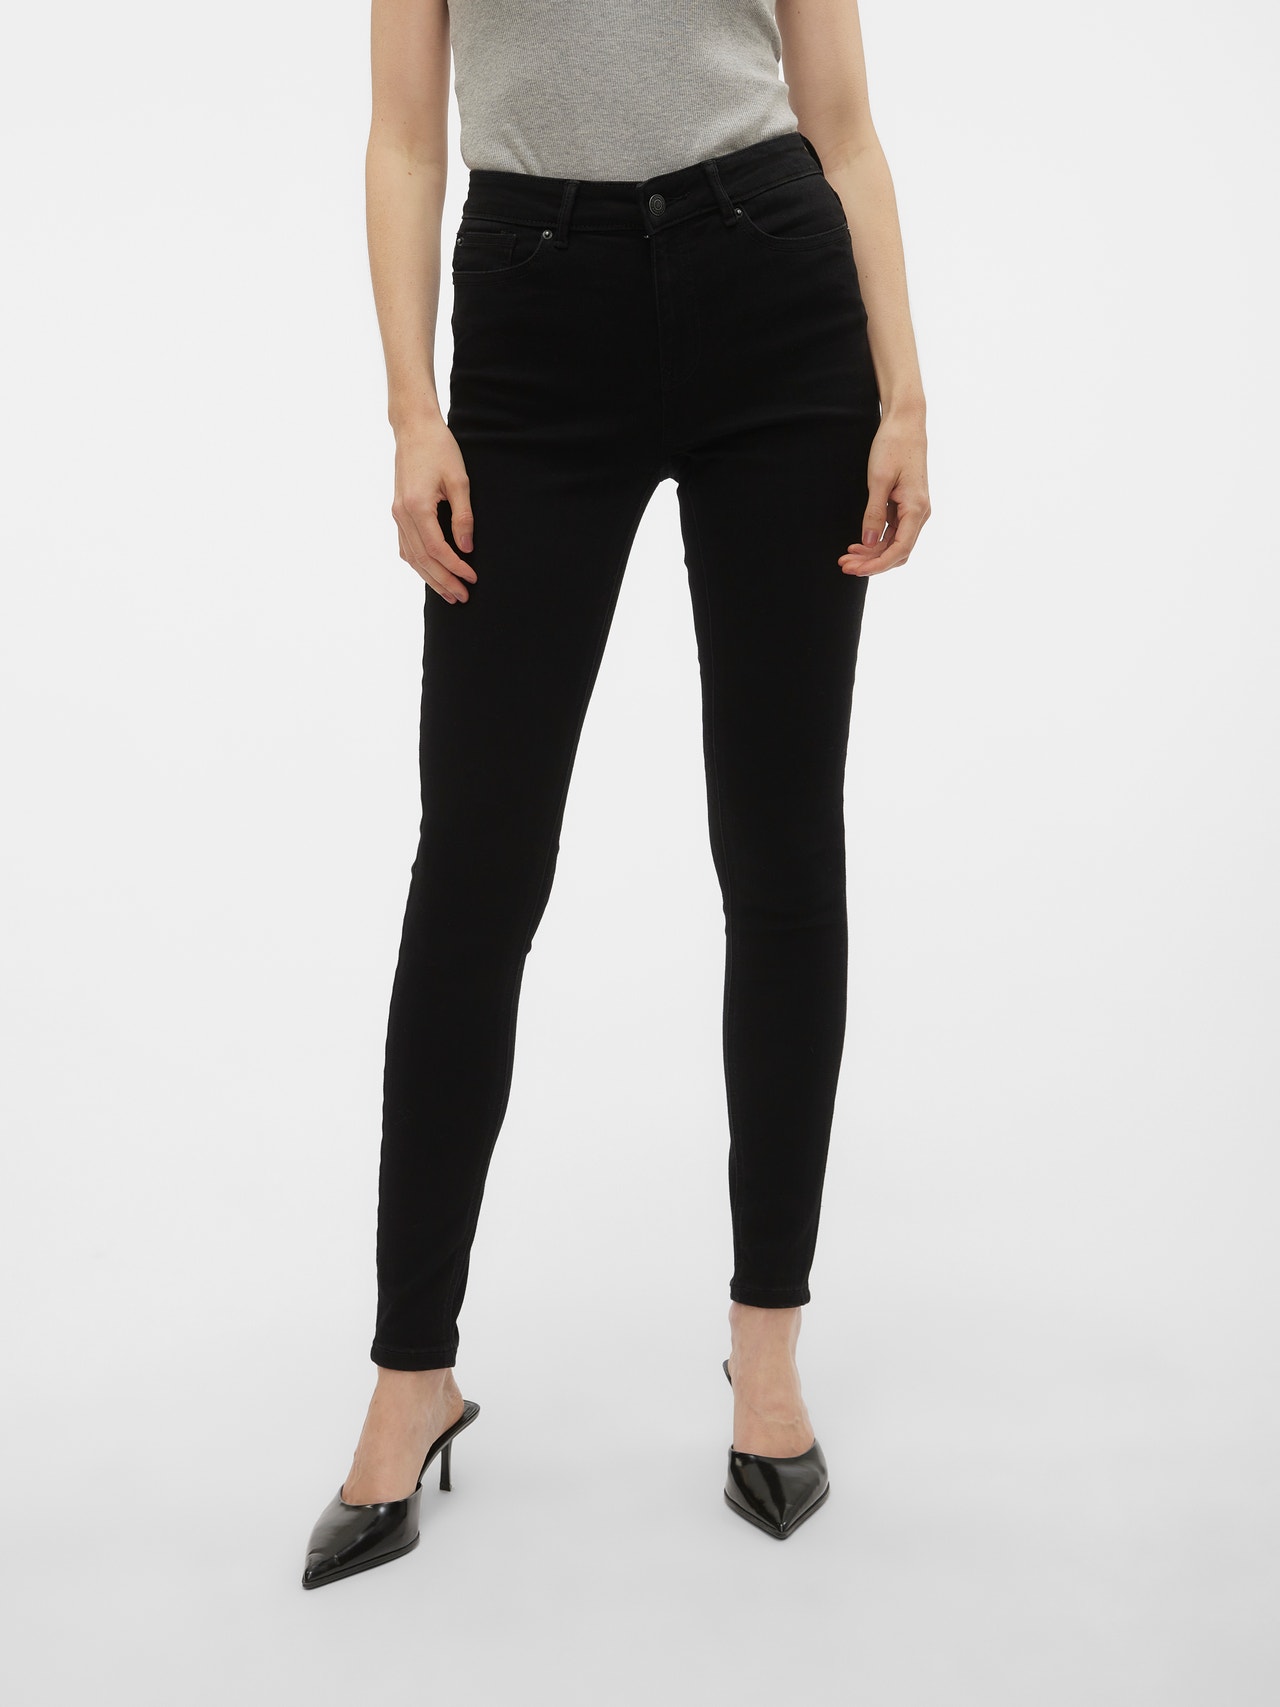 Vero Moda VMFLASH Krój skinny Jeans -Black Denim - 10306877